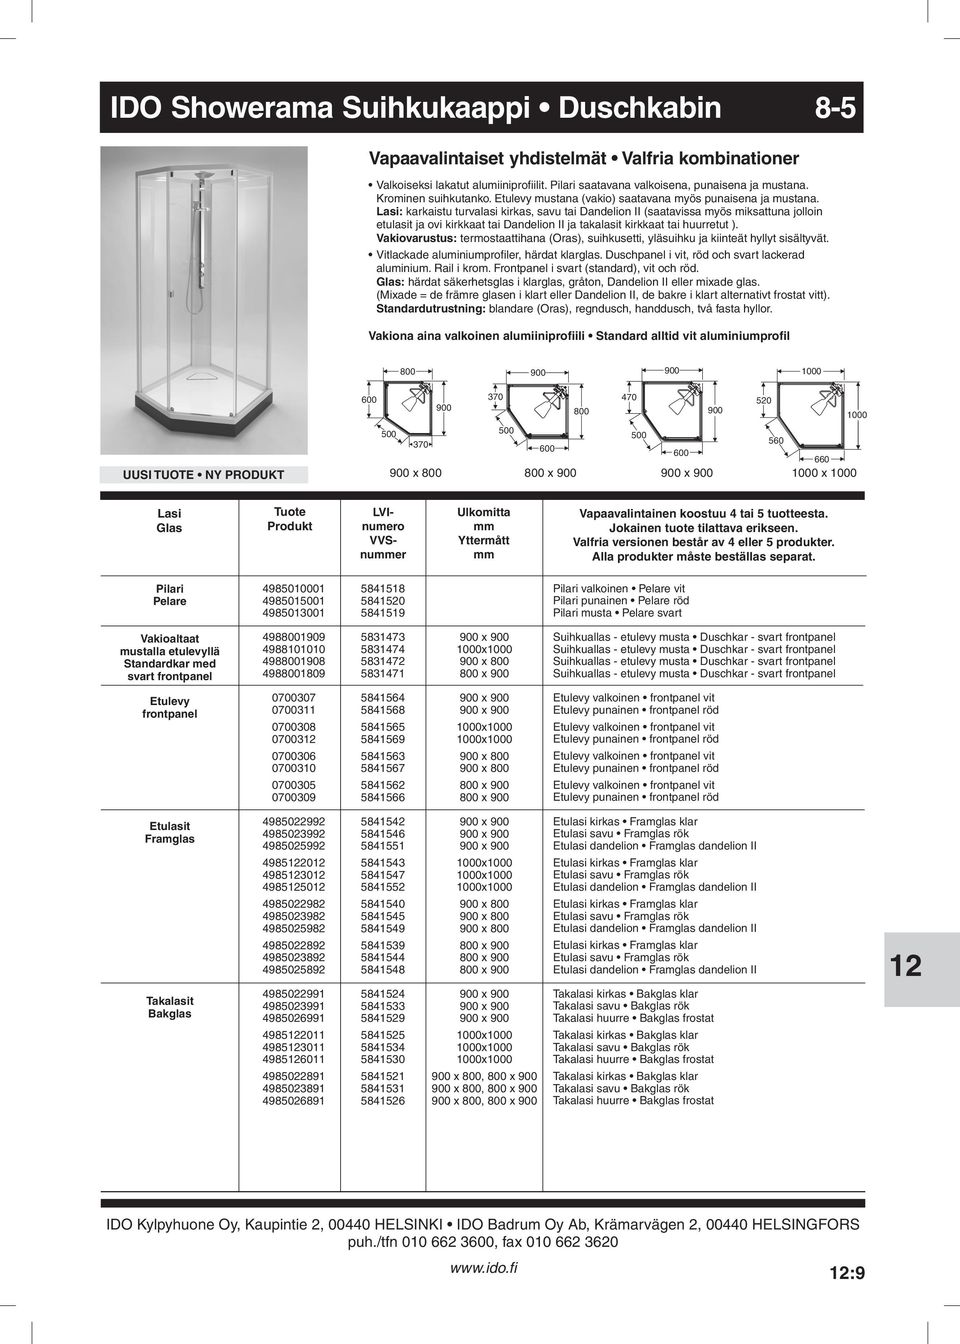 Dandelion II ja takalasit kirkkaat tai huurretut ) Vakiovarustus: termostaattihana (Oras), suihkusetti, yläsuihku ja kiinteät hyllyt sisältyvät Vitlackade aluminiumprofiler, härdat klarglas